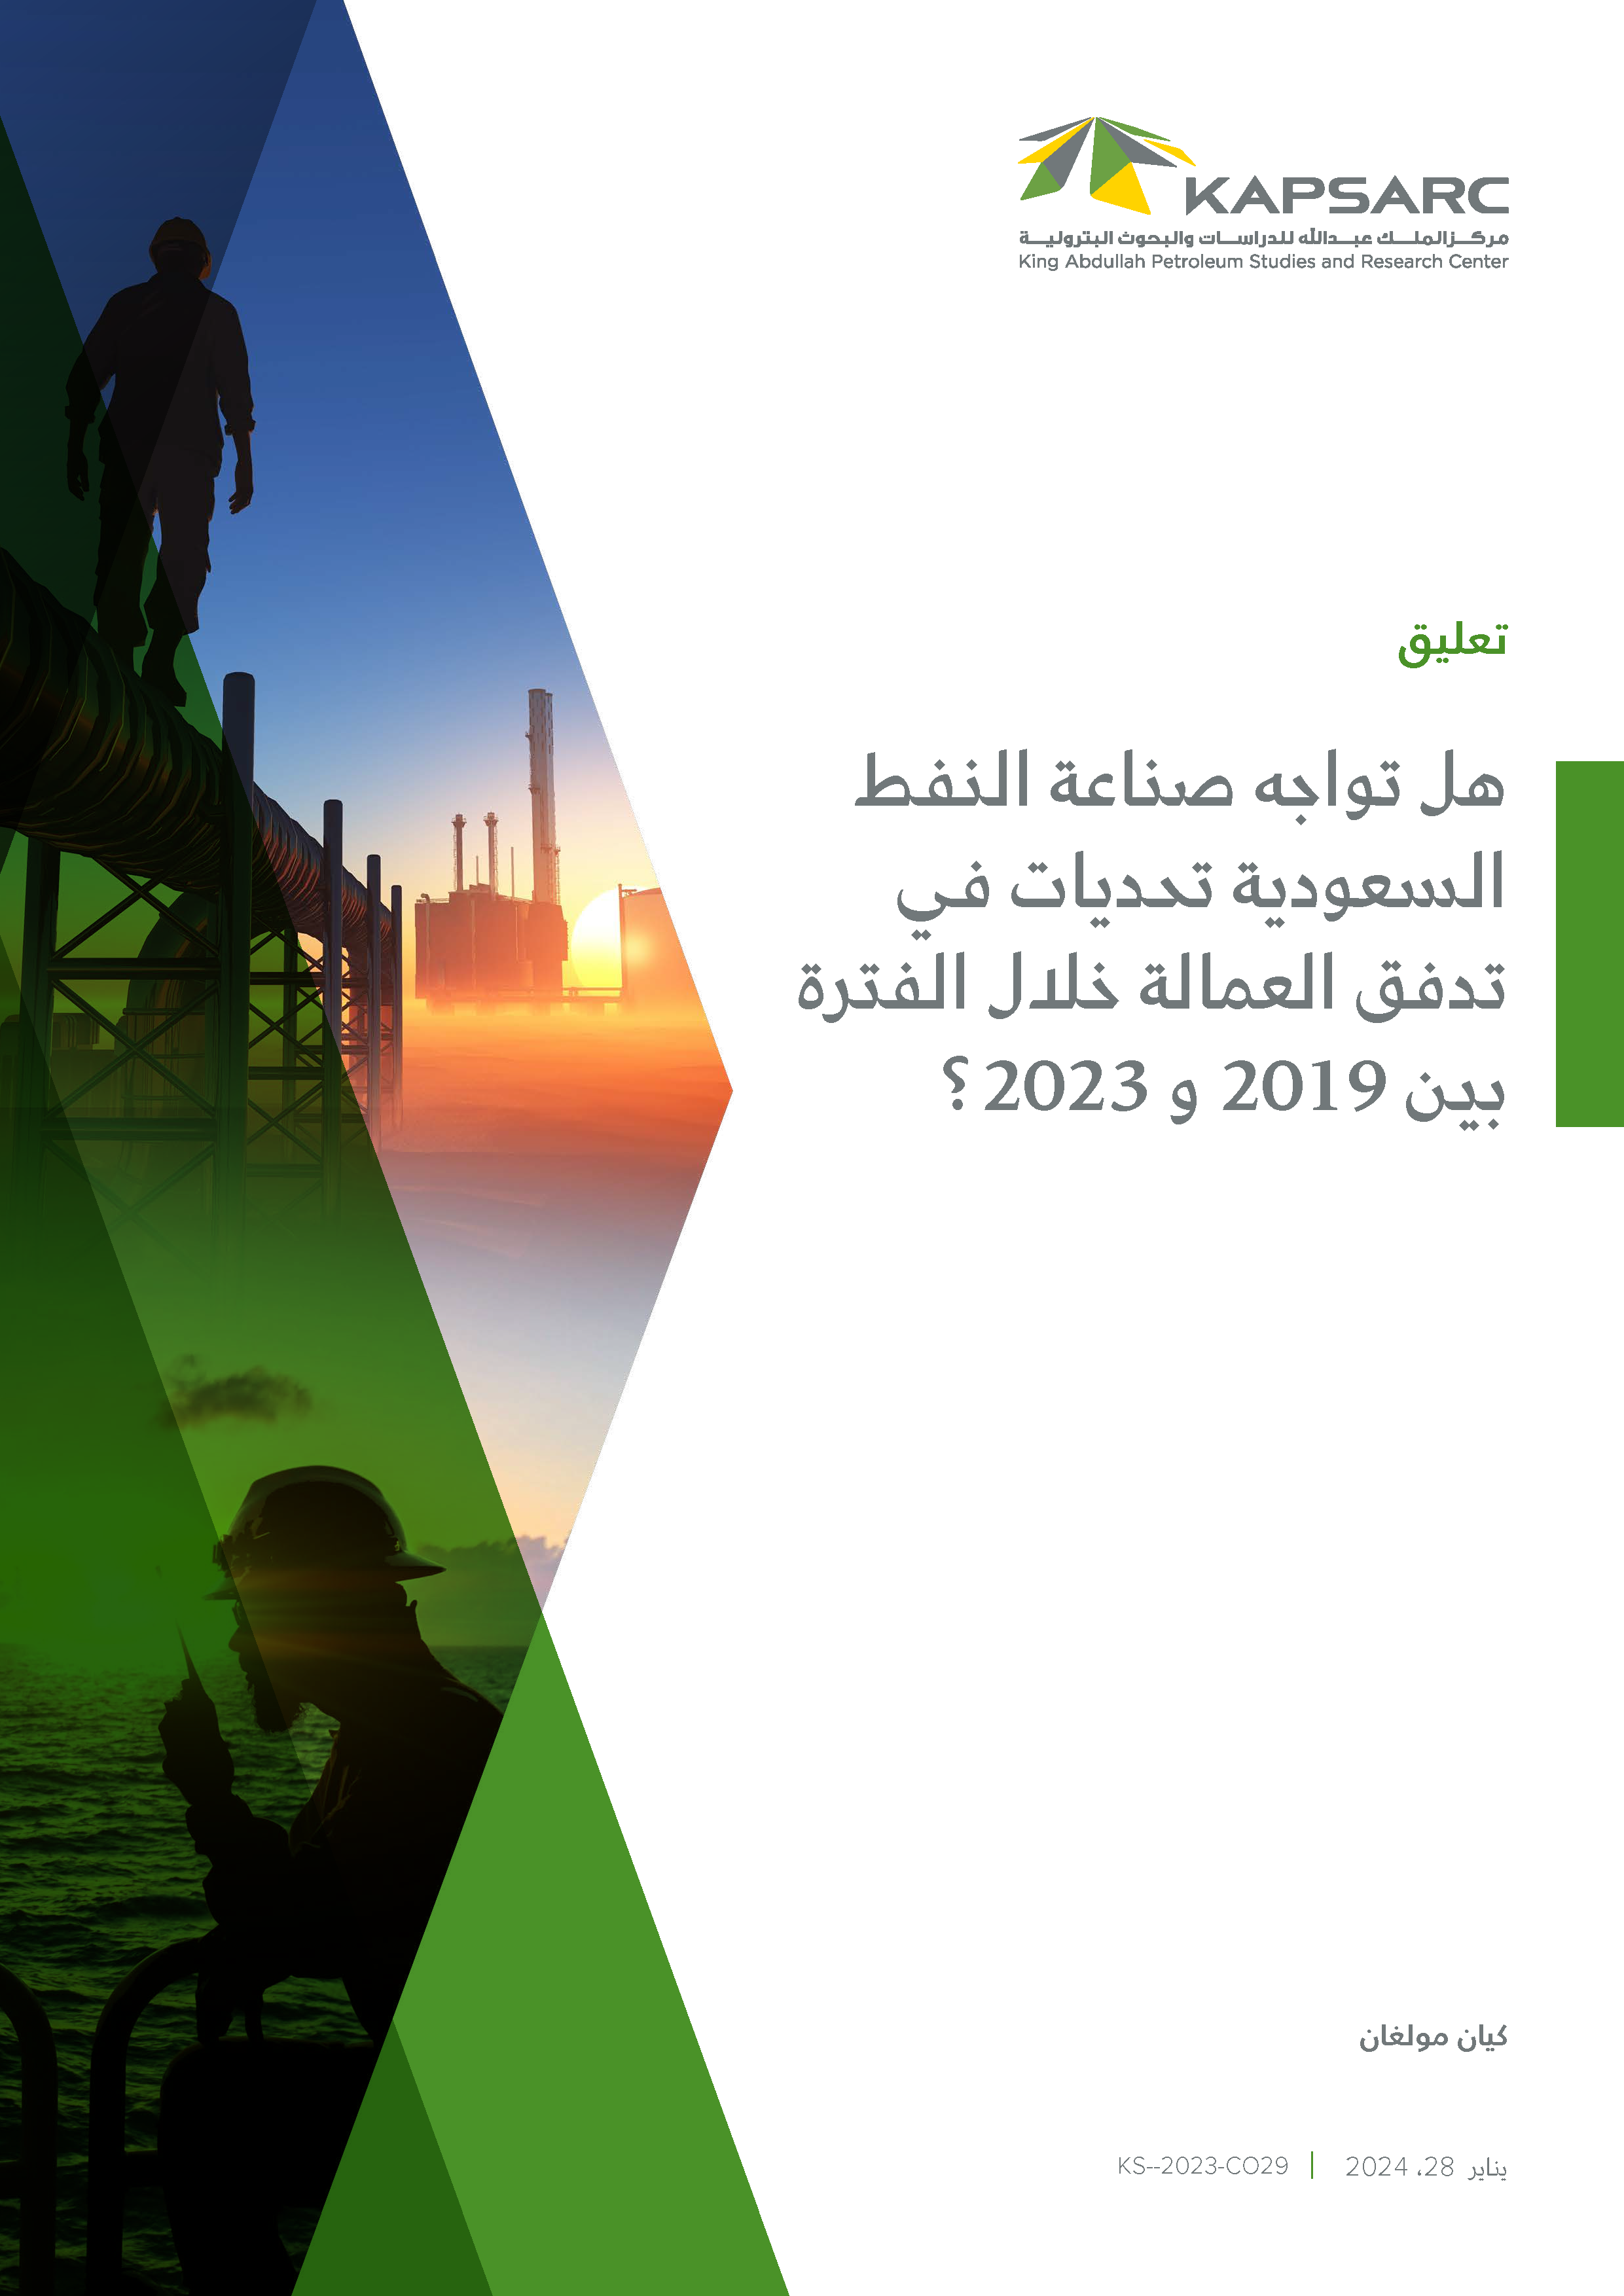 هل تواجه صناعة النفط السعودية تحديات في تدفق العمالة خلال الفترة بين 2019 و 2023 ؟